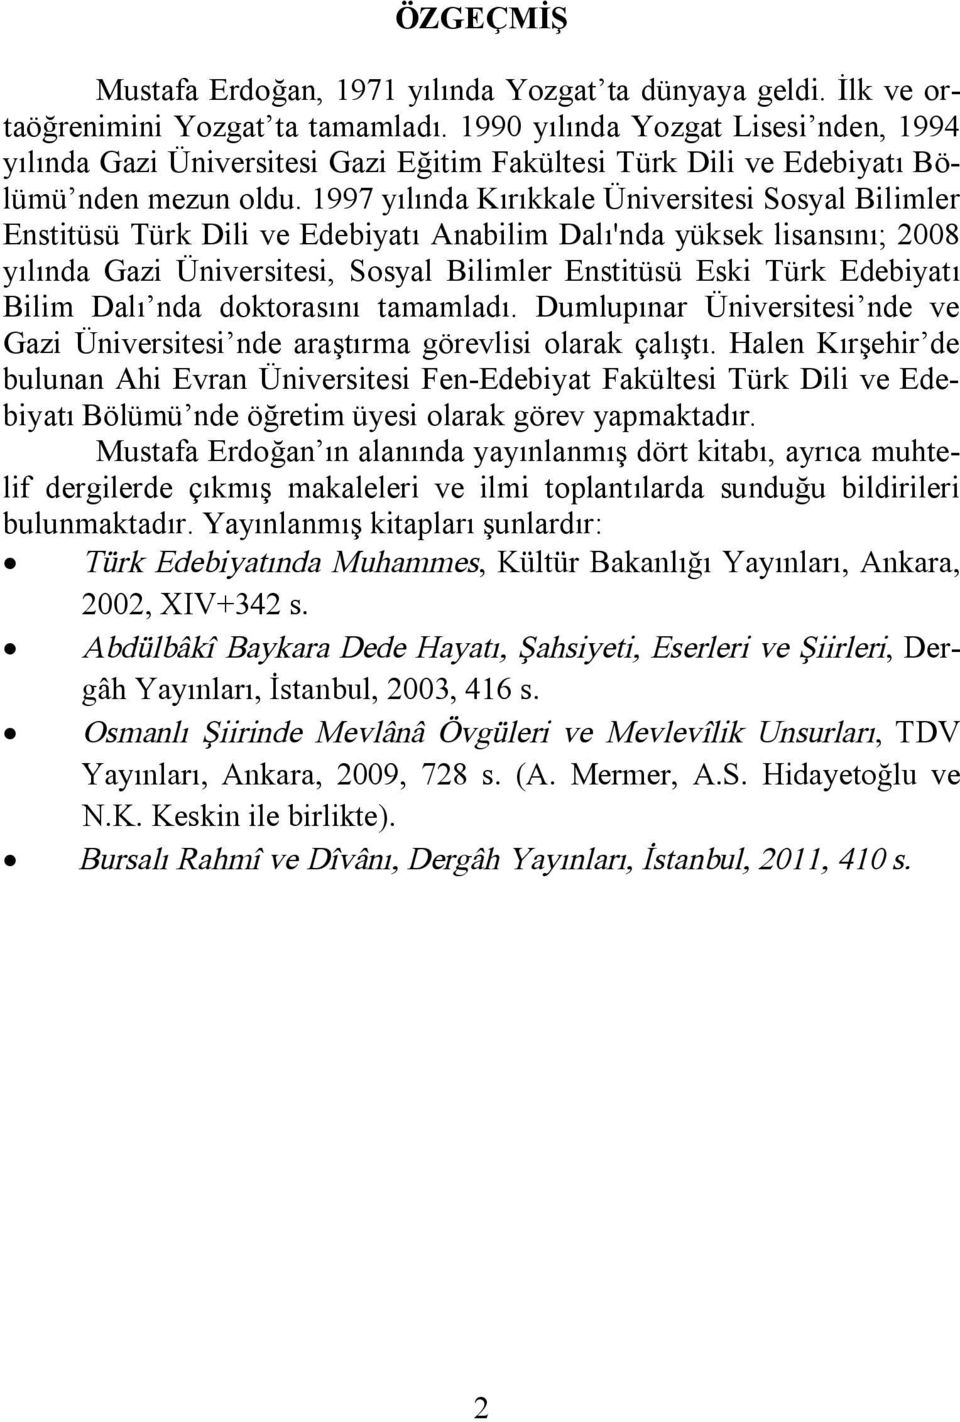 1997 yılında Kırıkkale Üniversitesi Sosyal Bilimler Enstitüsü Türk Dili ve Edebiyatı Anabilim Dalı'nda yüksek lisansını; 2008 yılında Gazi Üniversitesi, Sosyal Bilimler Enstitüsü Eski Türk Edebiyatı